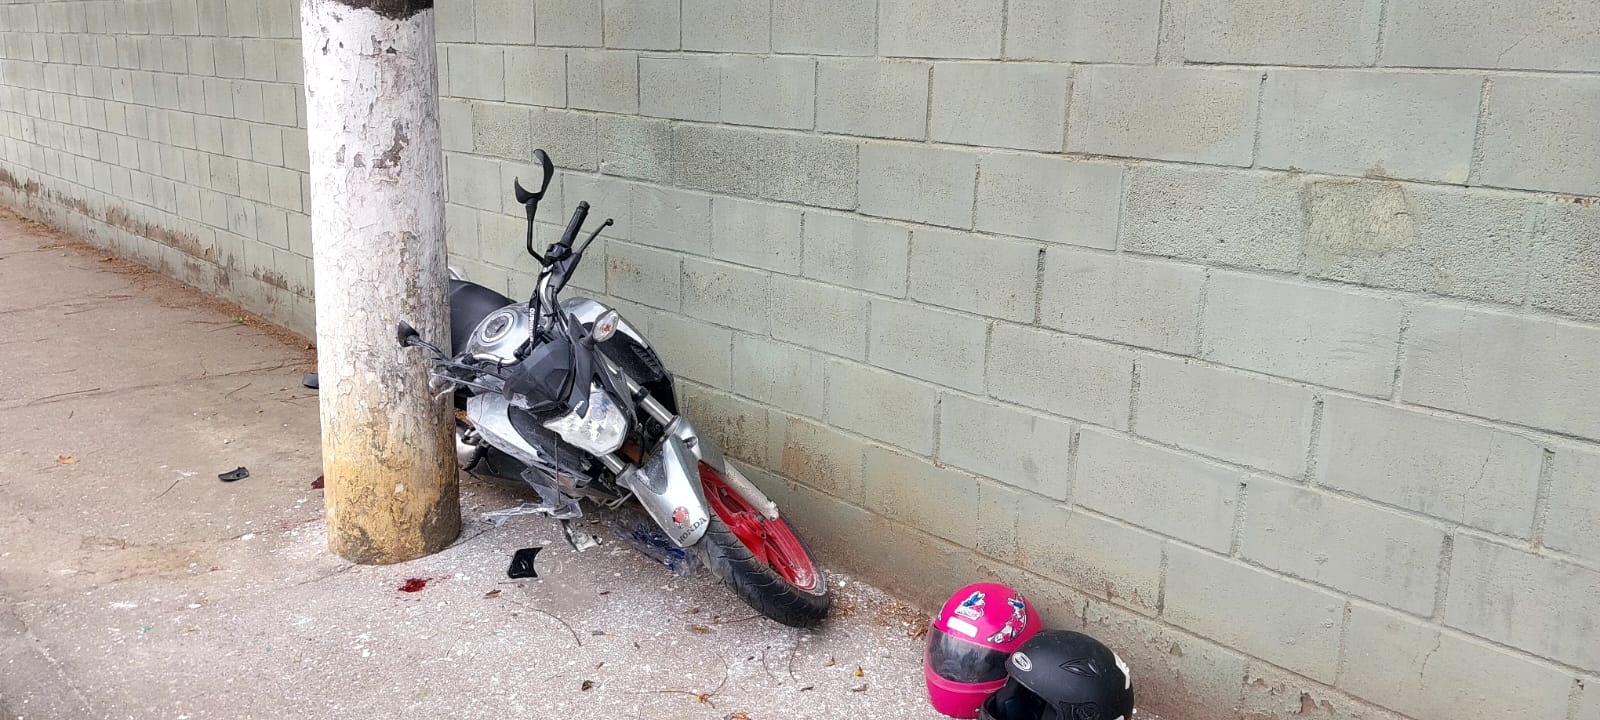 Motociclista em ultrapassagem irregular colide e deixa feridos em Guararema